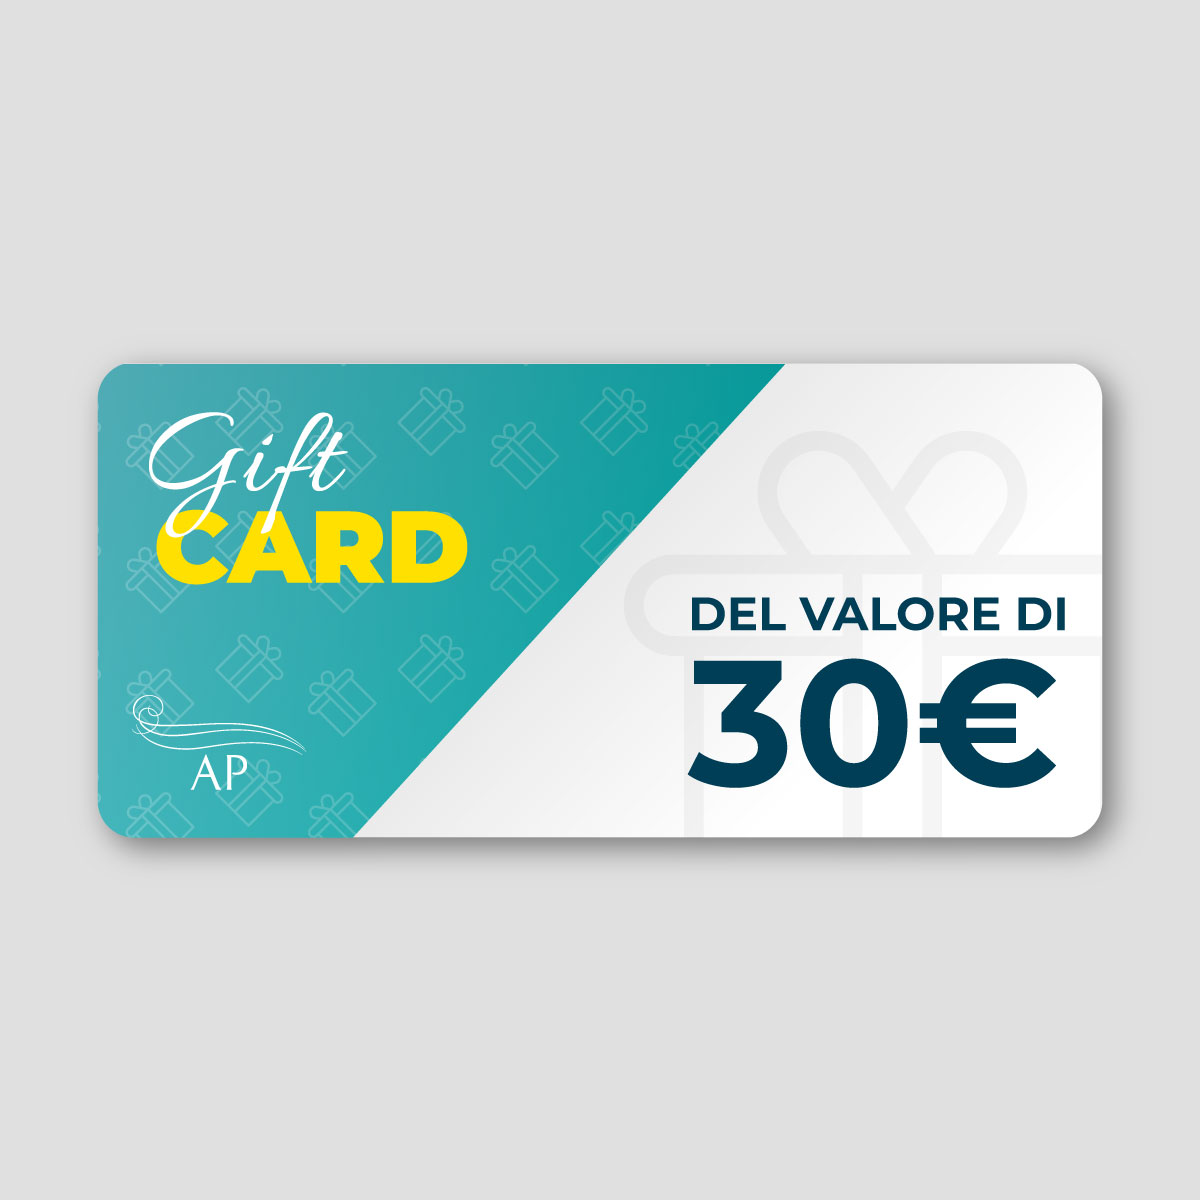 Gift Card da 30 €